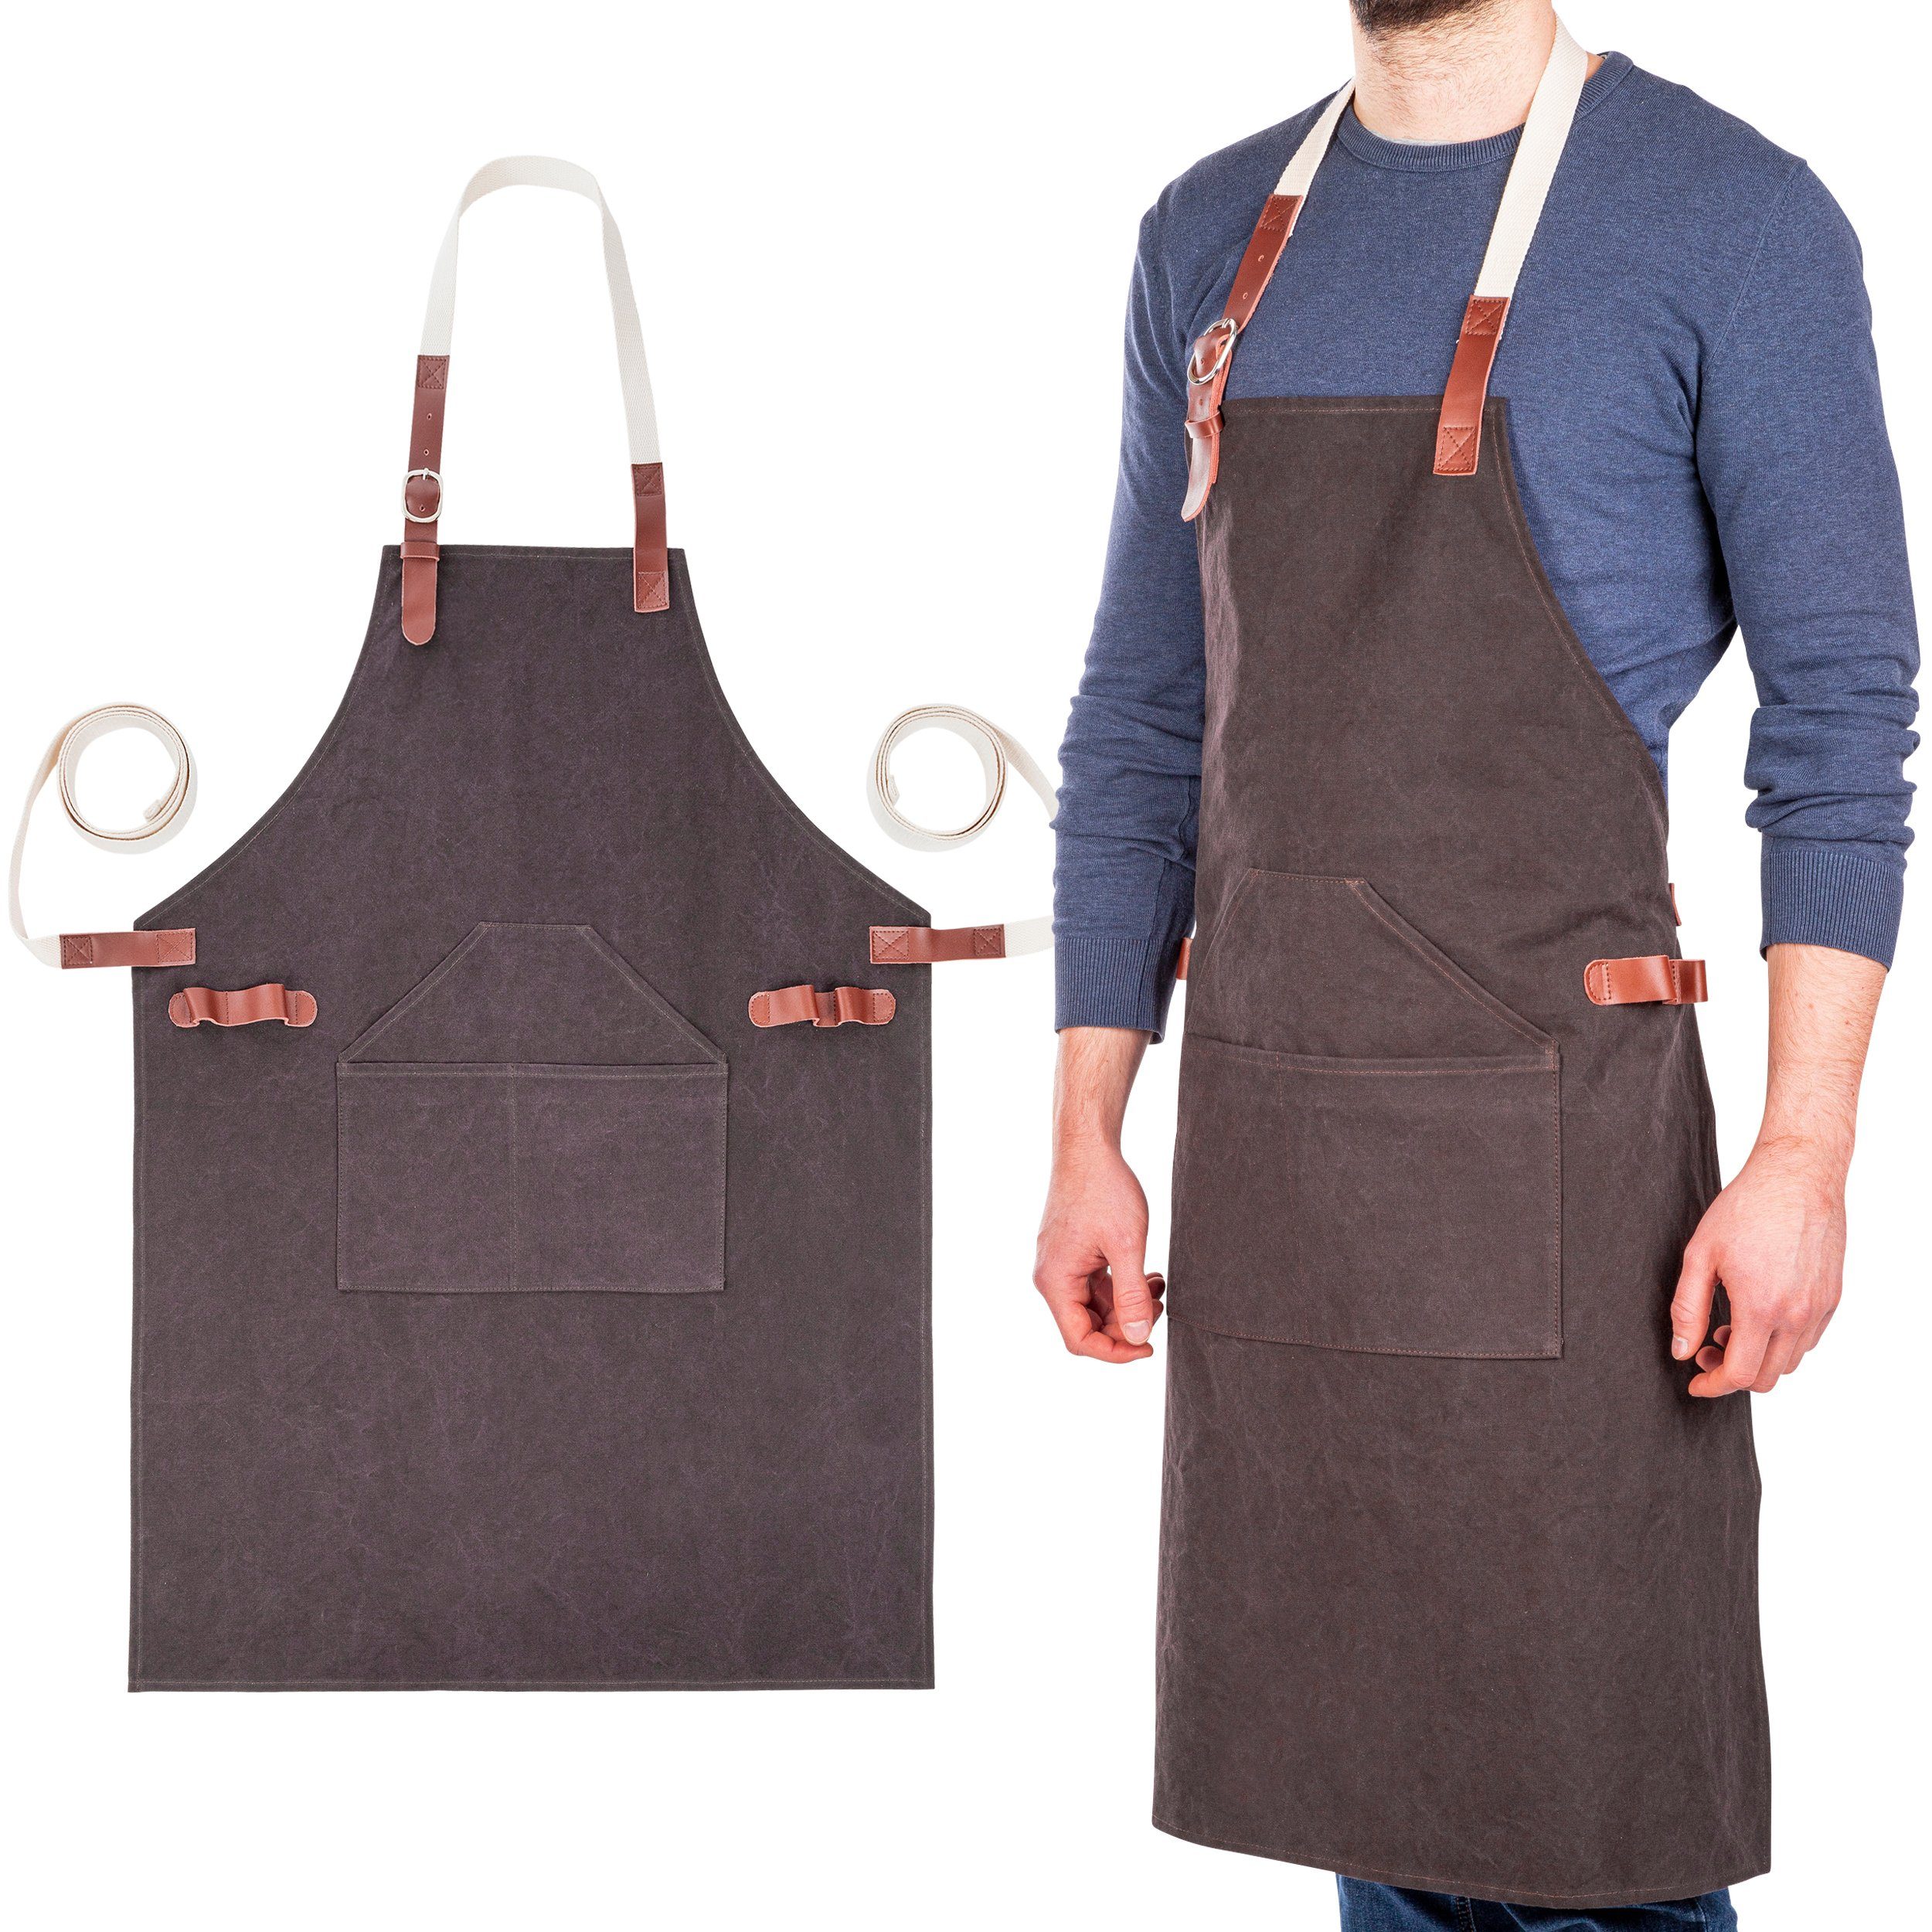 Küchenschürze mit Taschen PLAUSO Grillschürze Kochschürze für Männer Frauen Verstellbarer Schürze Rundumschutz vor Fettschmutz & Spritzwasser 